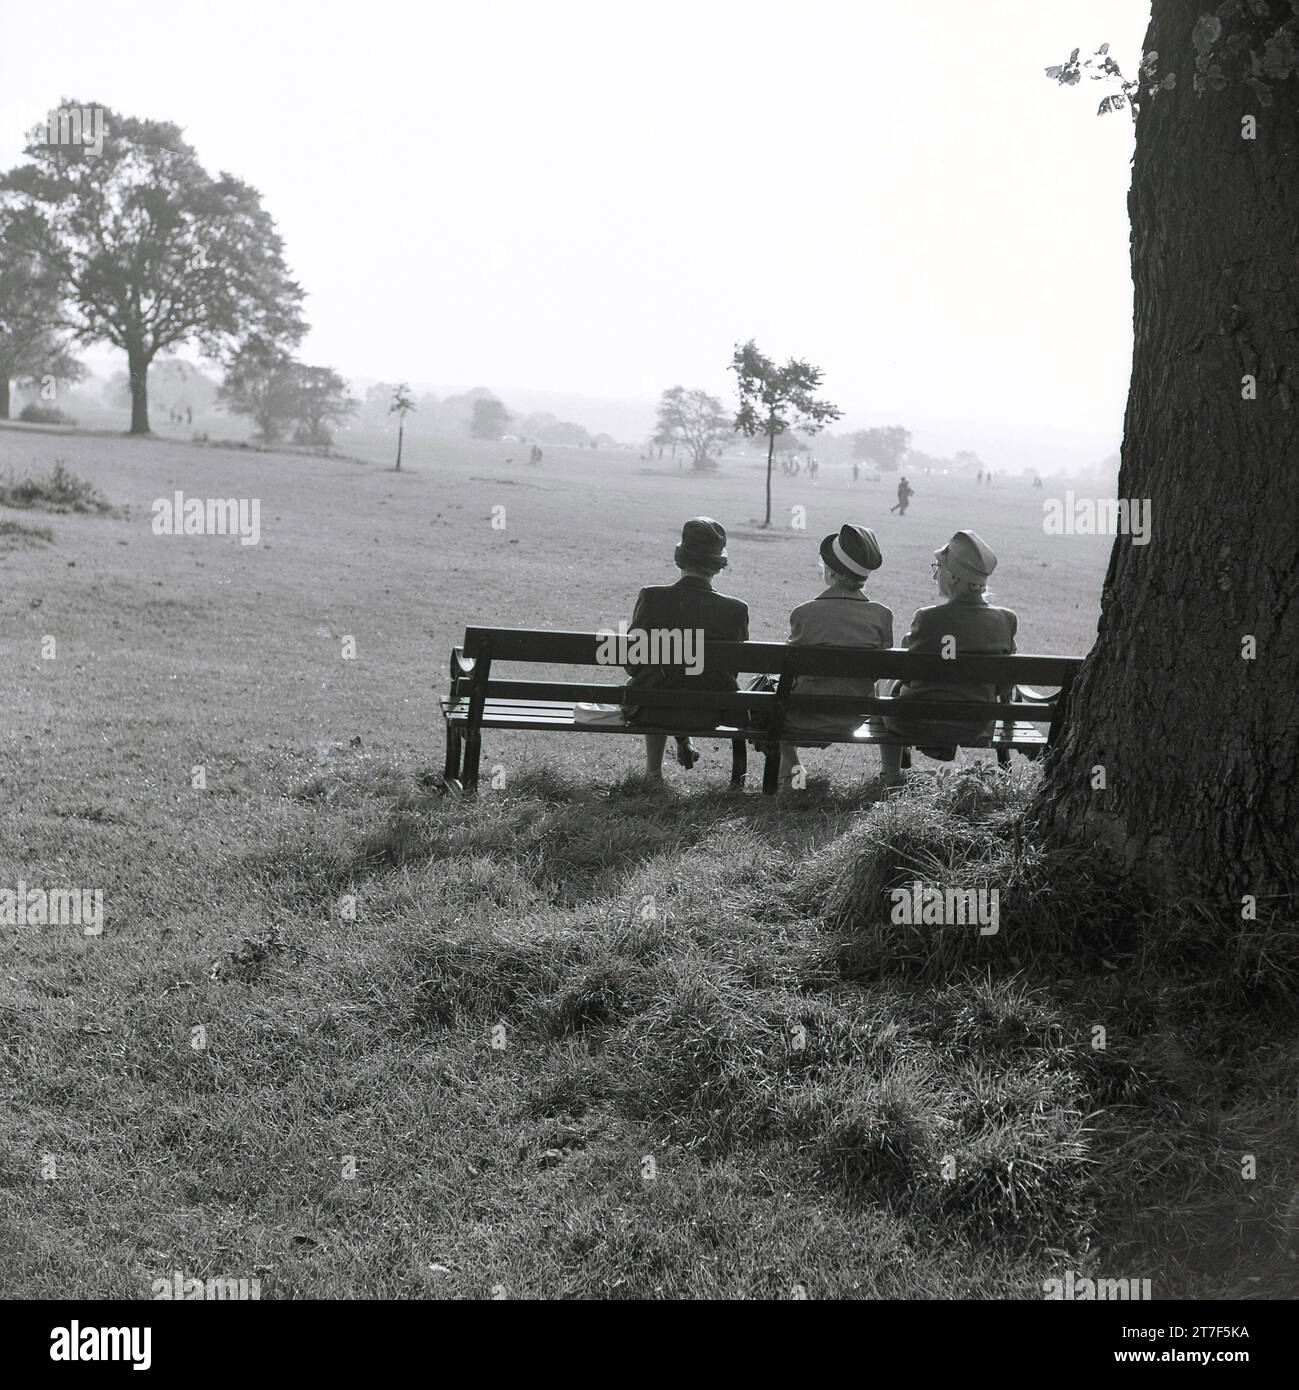 Anni '1960, tre signore anziane in cappotti e cappelli sedute l'una accanto all'altra su una panchina in un parco, affacciate sul paesaggio circostante, Inghilterra, Regno Unito. Foto Stock